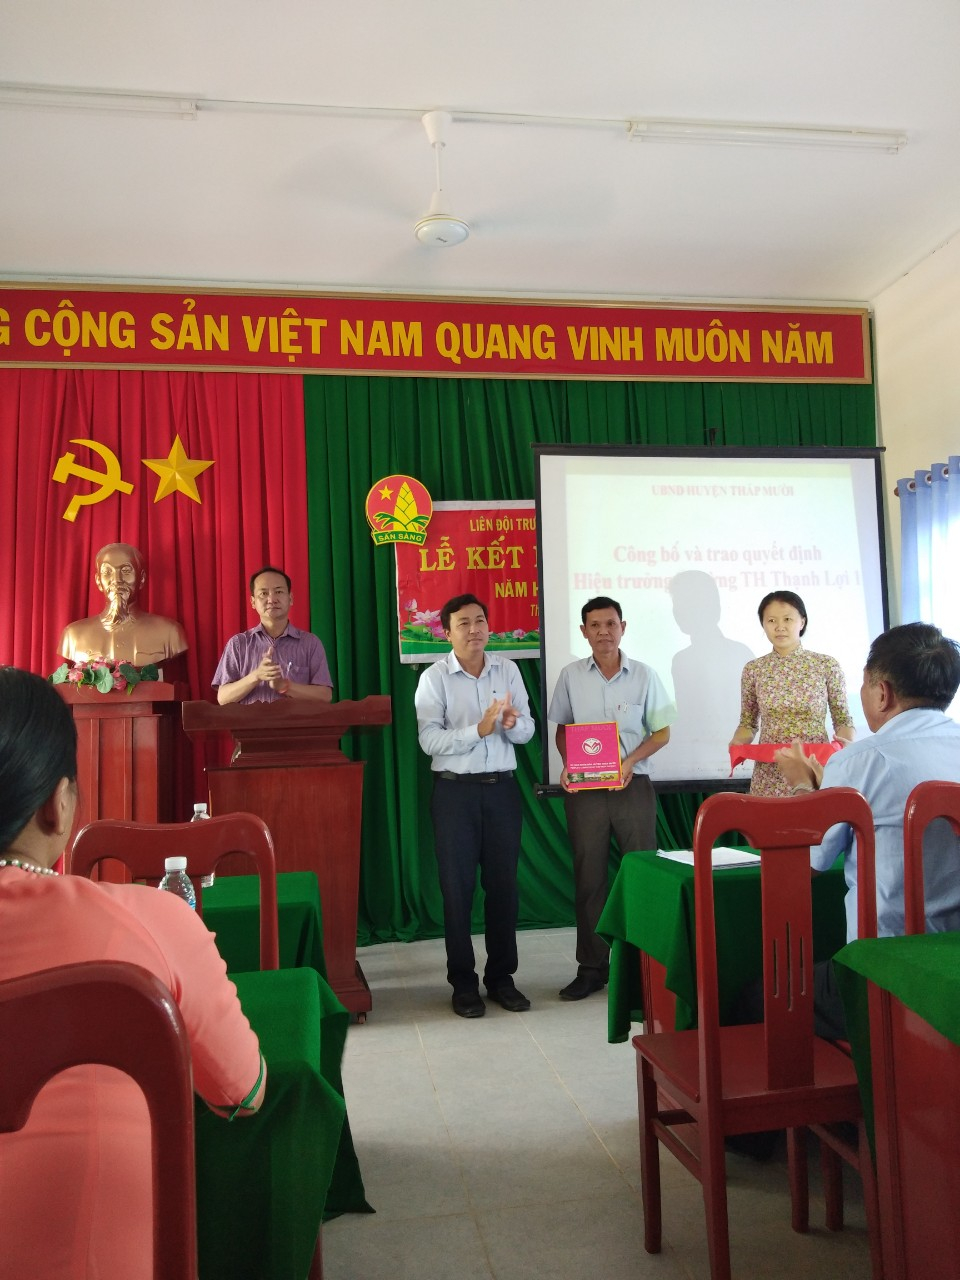 Thầy Ngô Thanh Sang, Trưởng phòng GD&ĐT HTM trao Quyết định điều động Hiệu trưởng cho Thầy Nguyễn Ngọc Minh